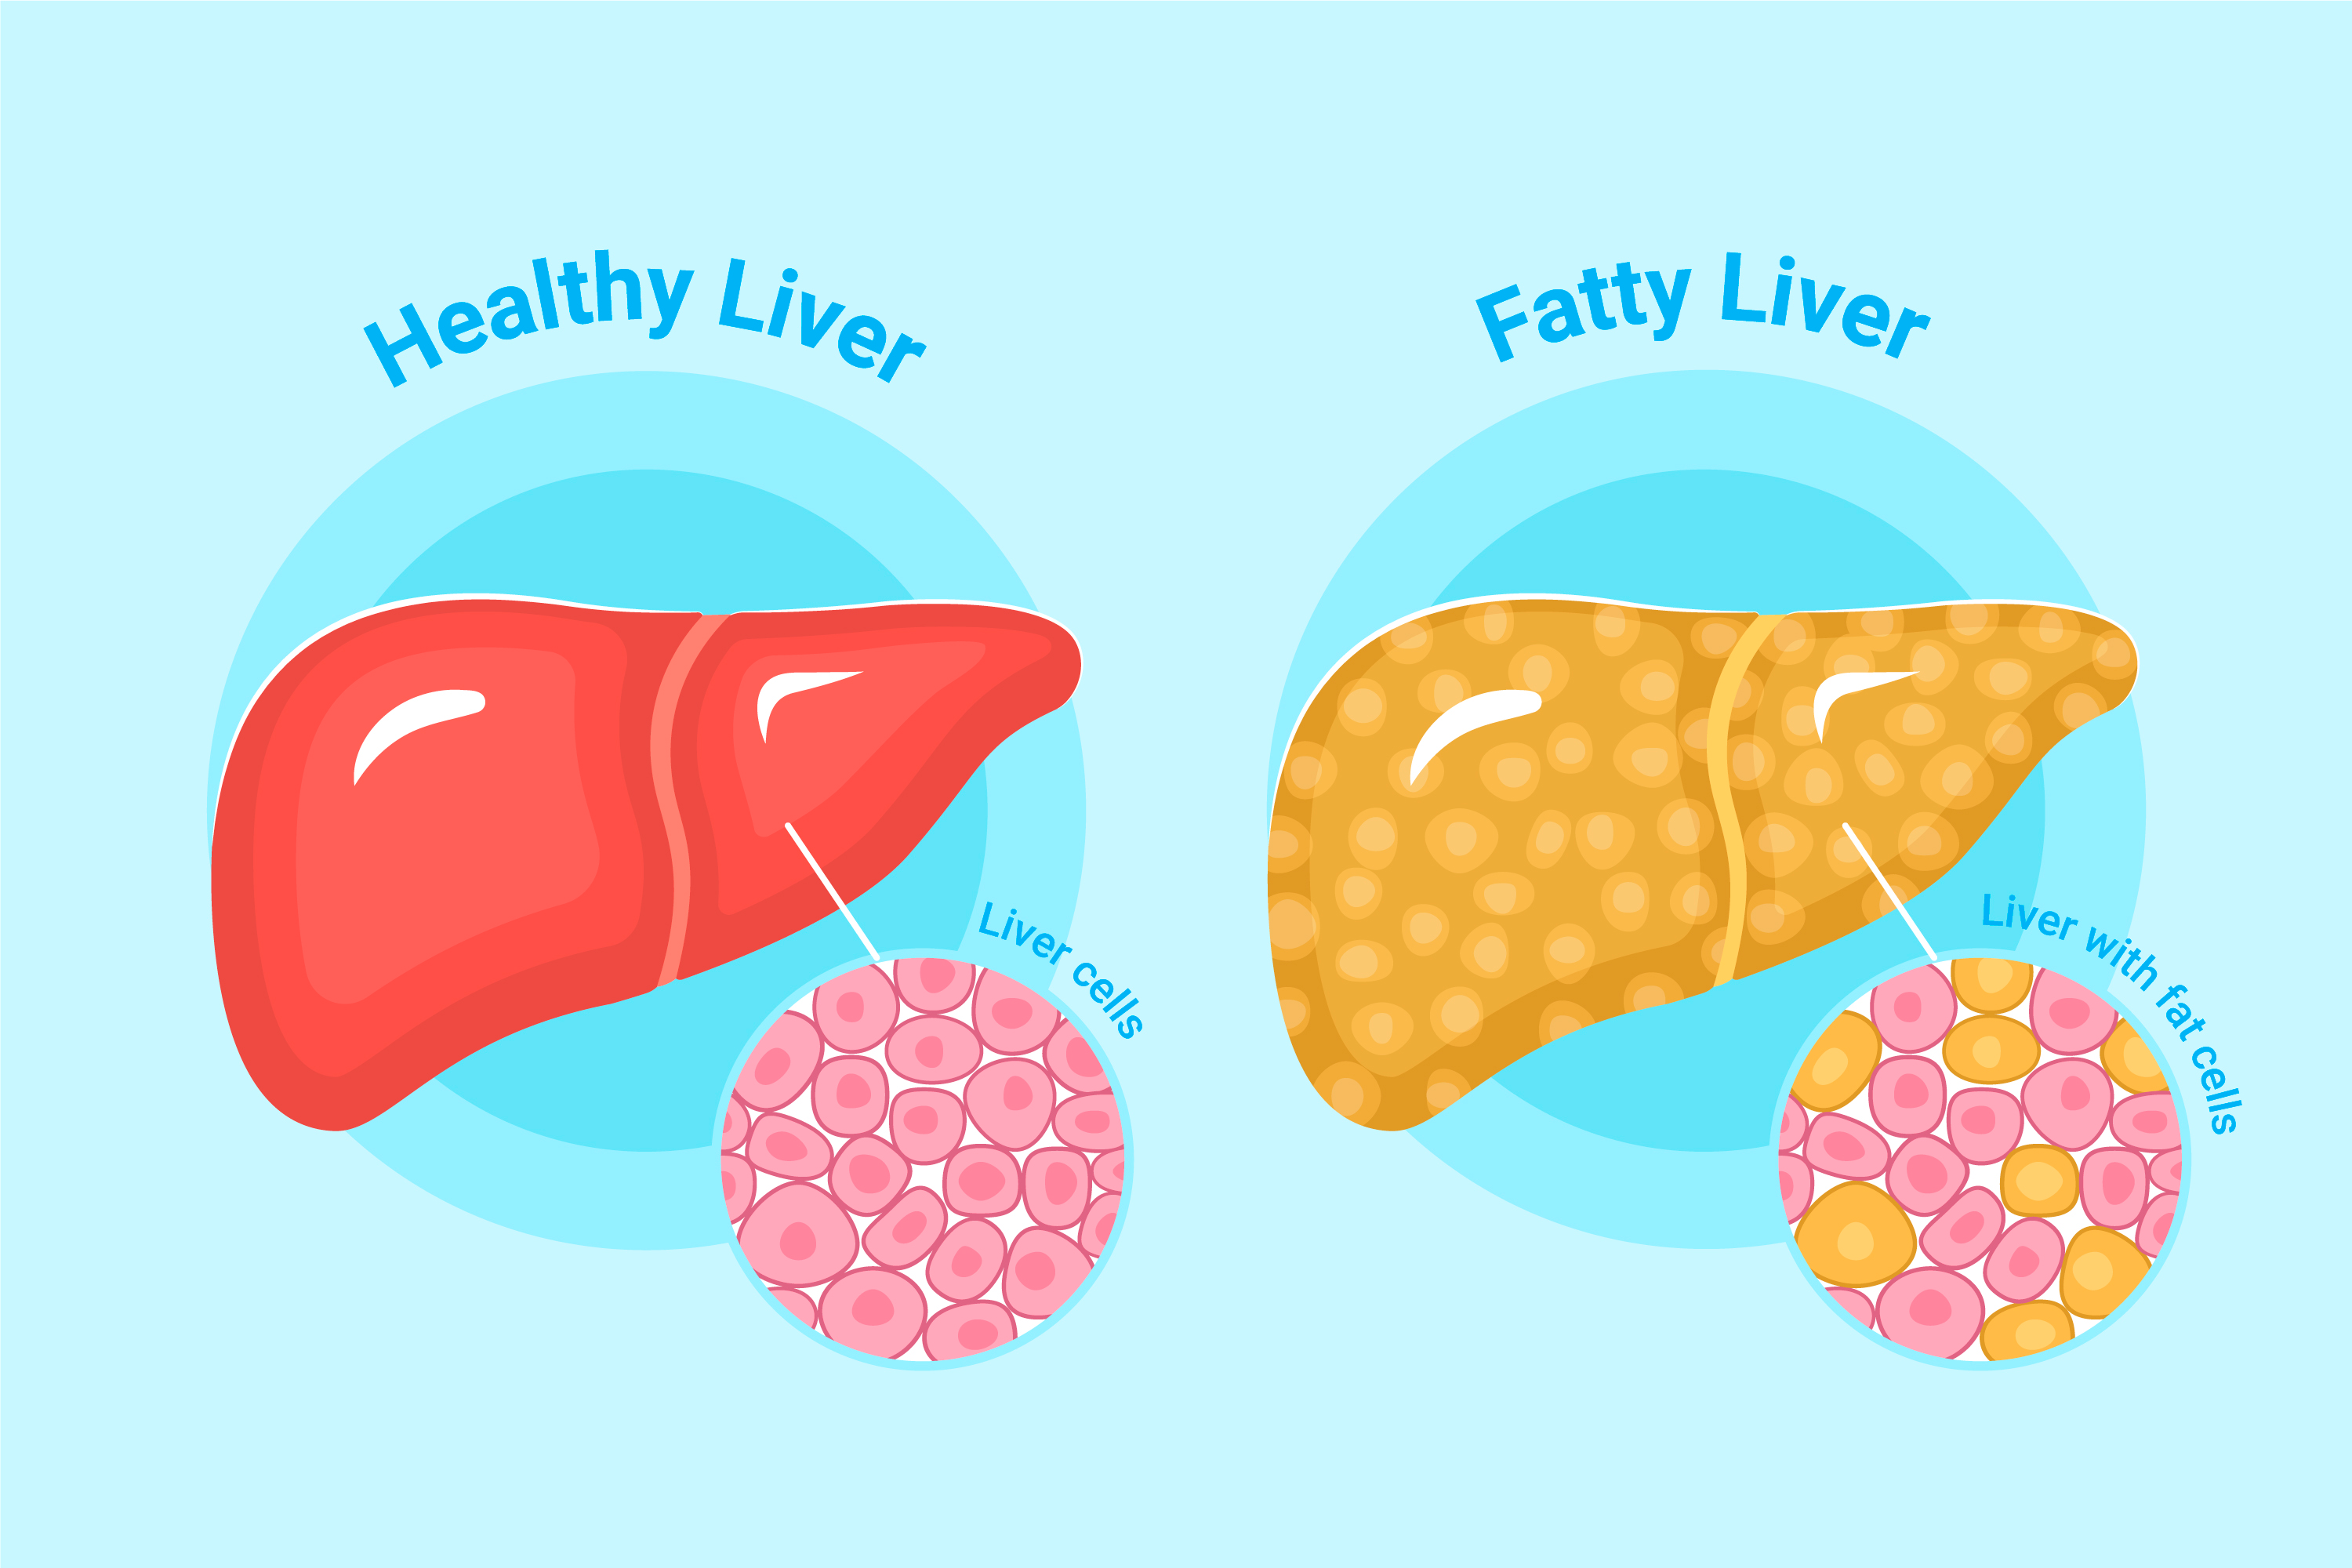 Liver damage due to fatty foods